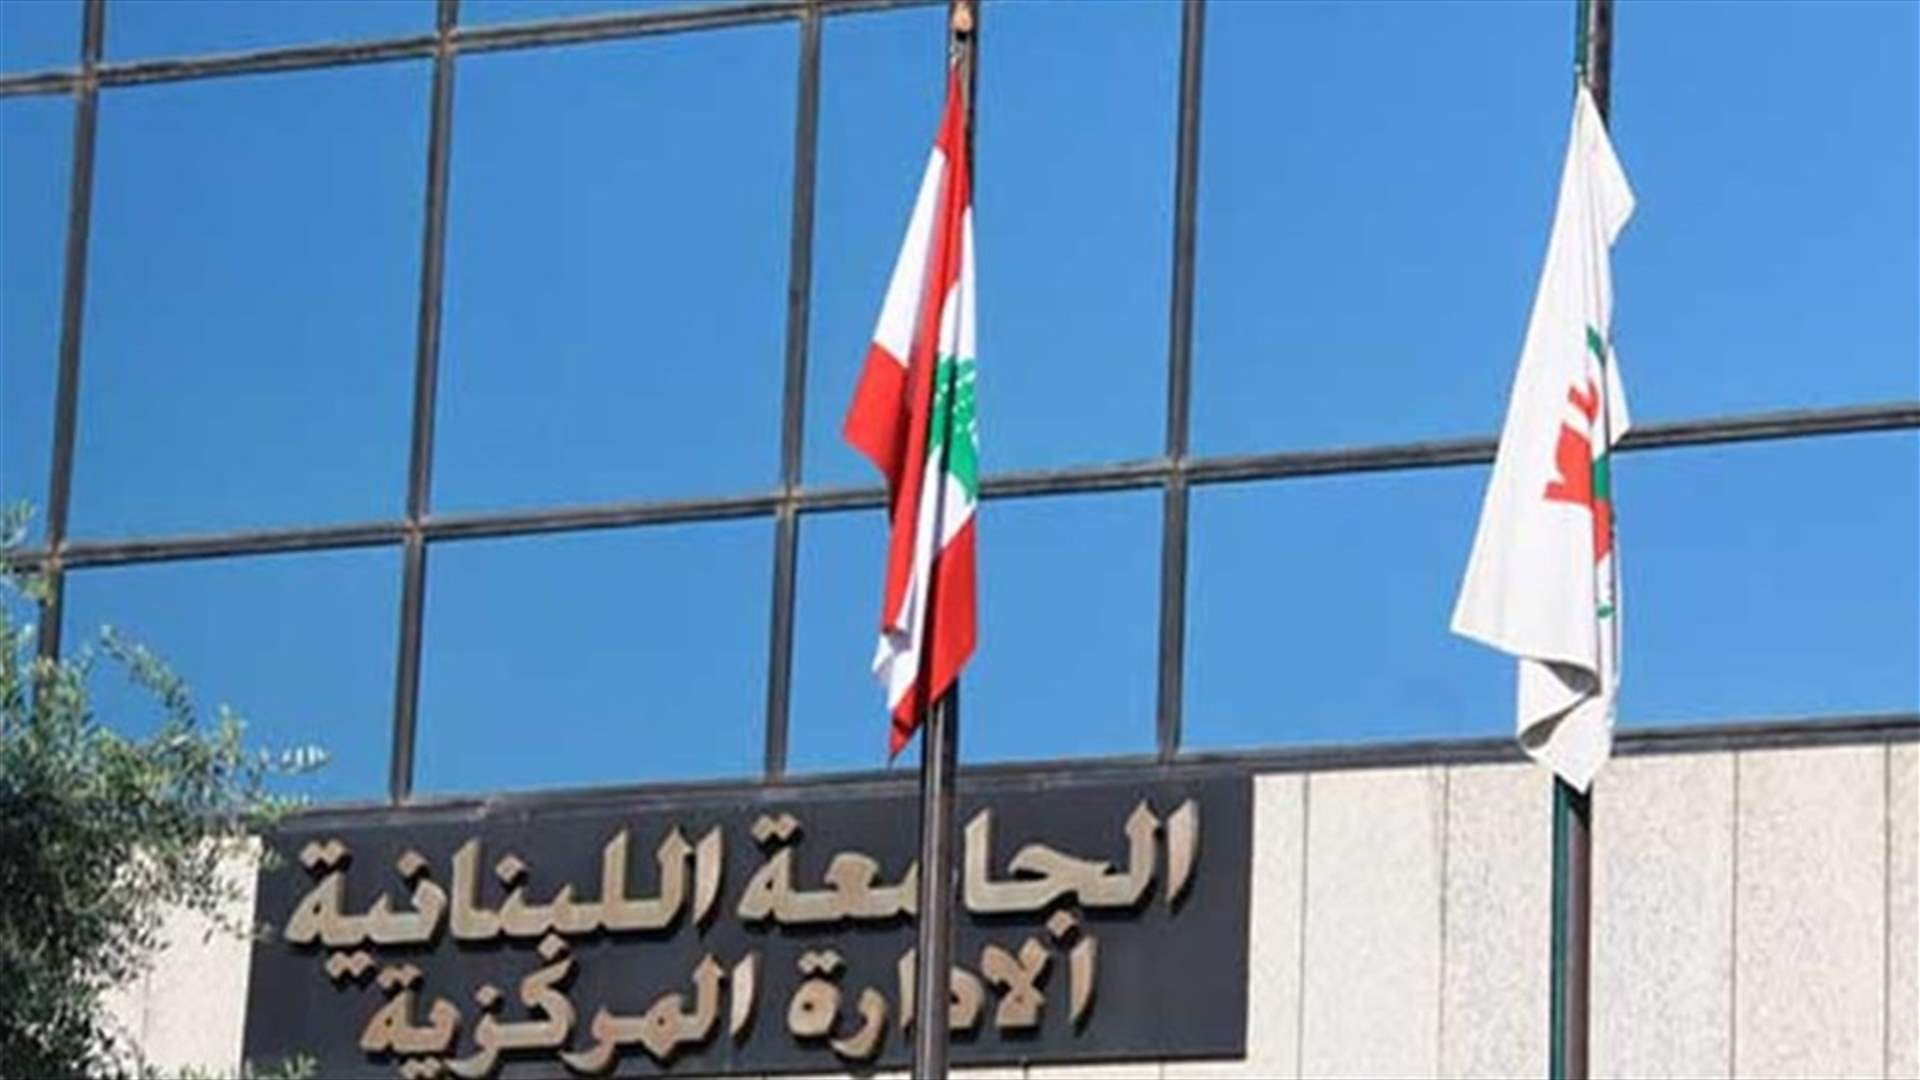 إضراب واعتصام الاربعاء المقبل للاساتذة المتفرغين في الجامعة اللبنانية